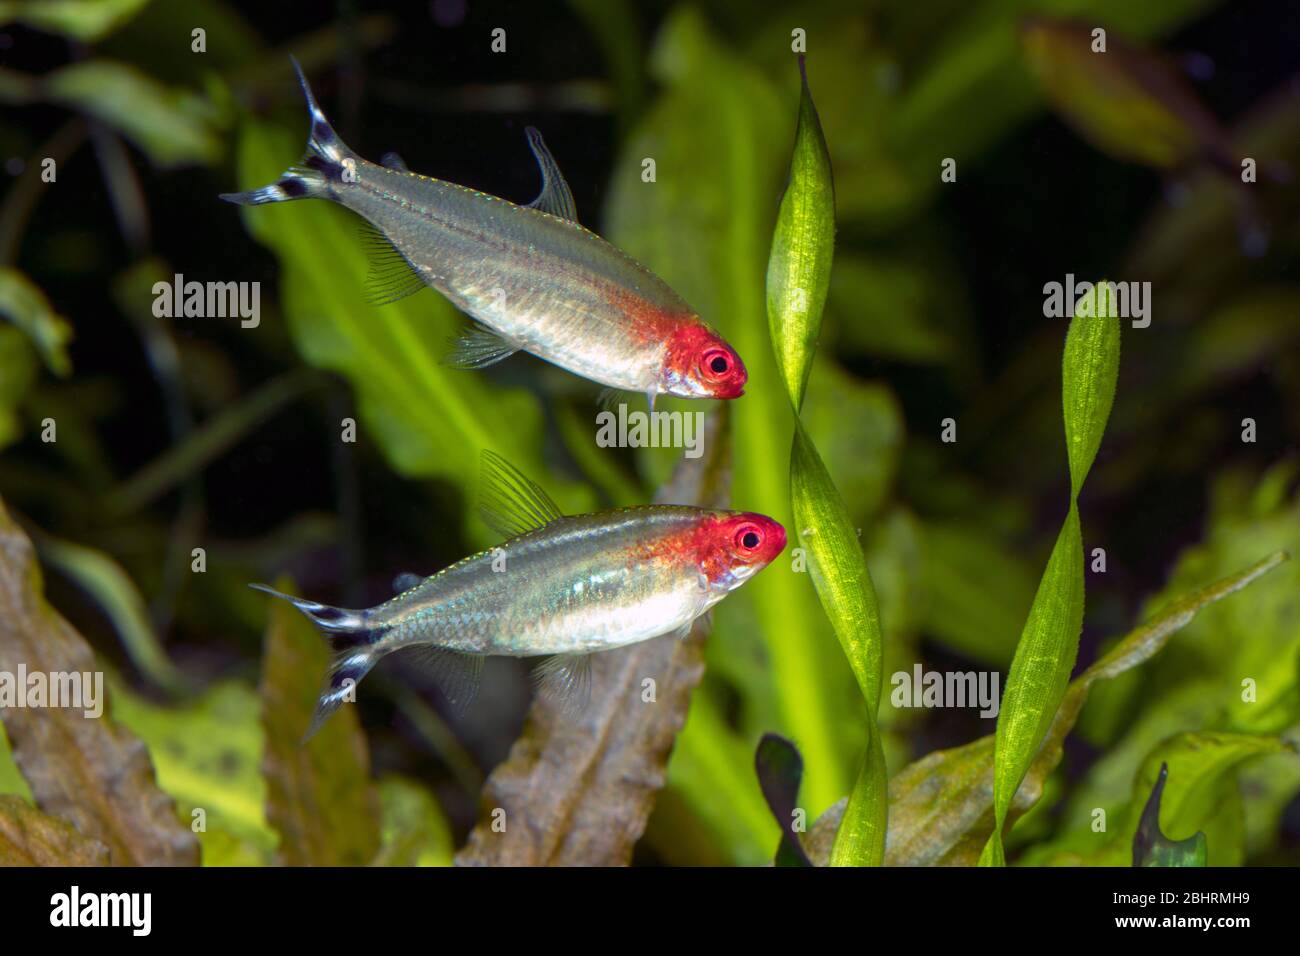 Rummy-nose tetra (Scientific Name: Hemigrammus rhodostomus) in freshwater aquarium Stock Photo